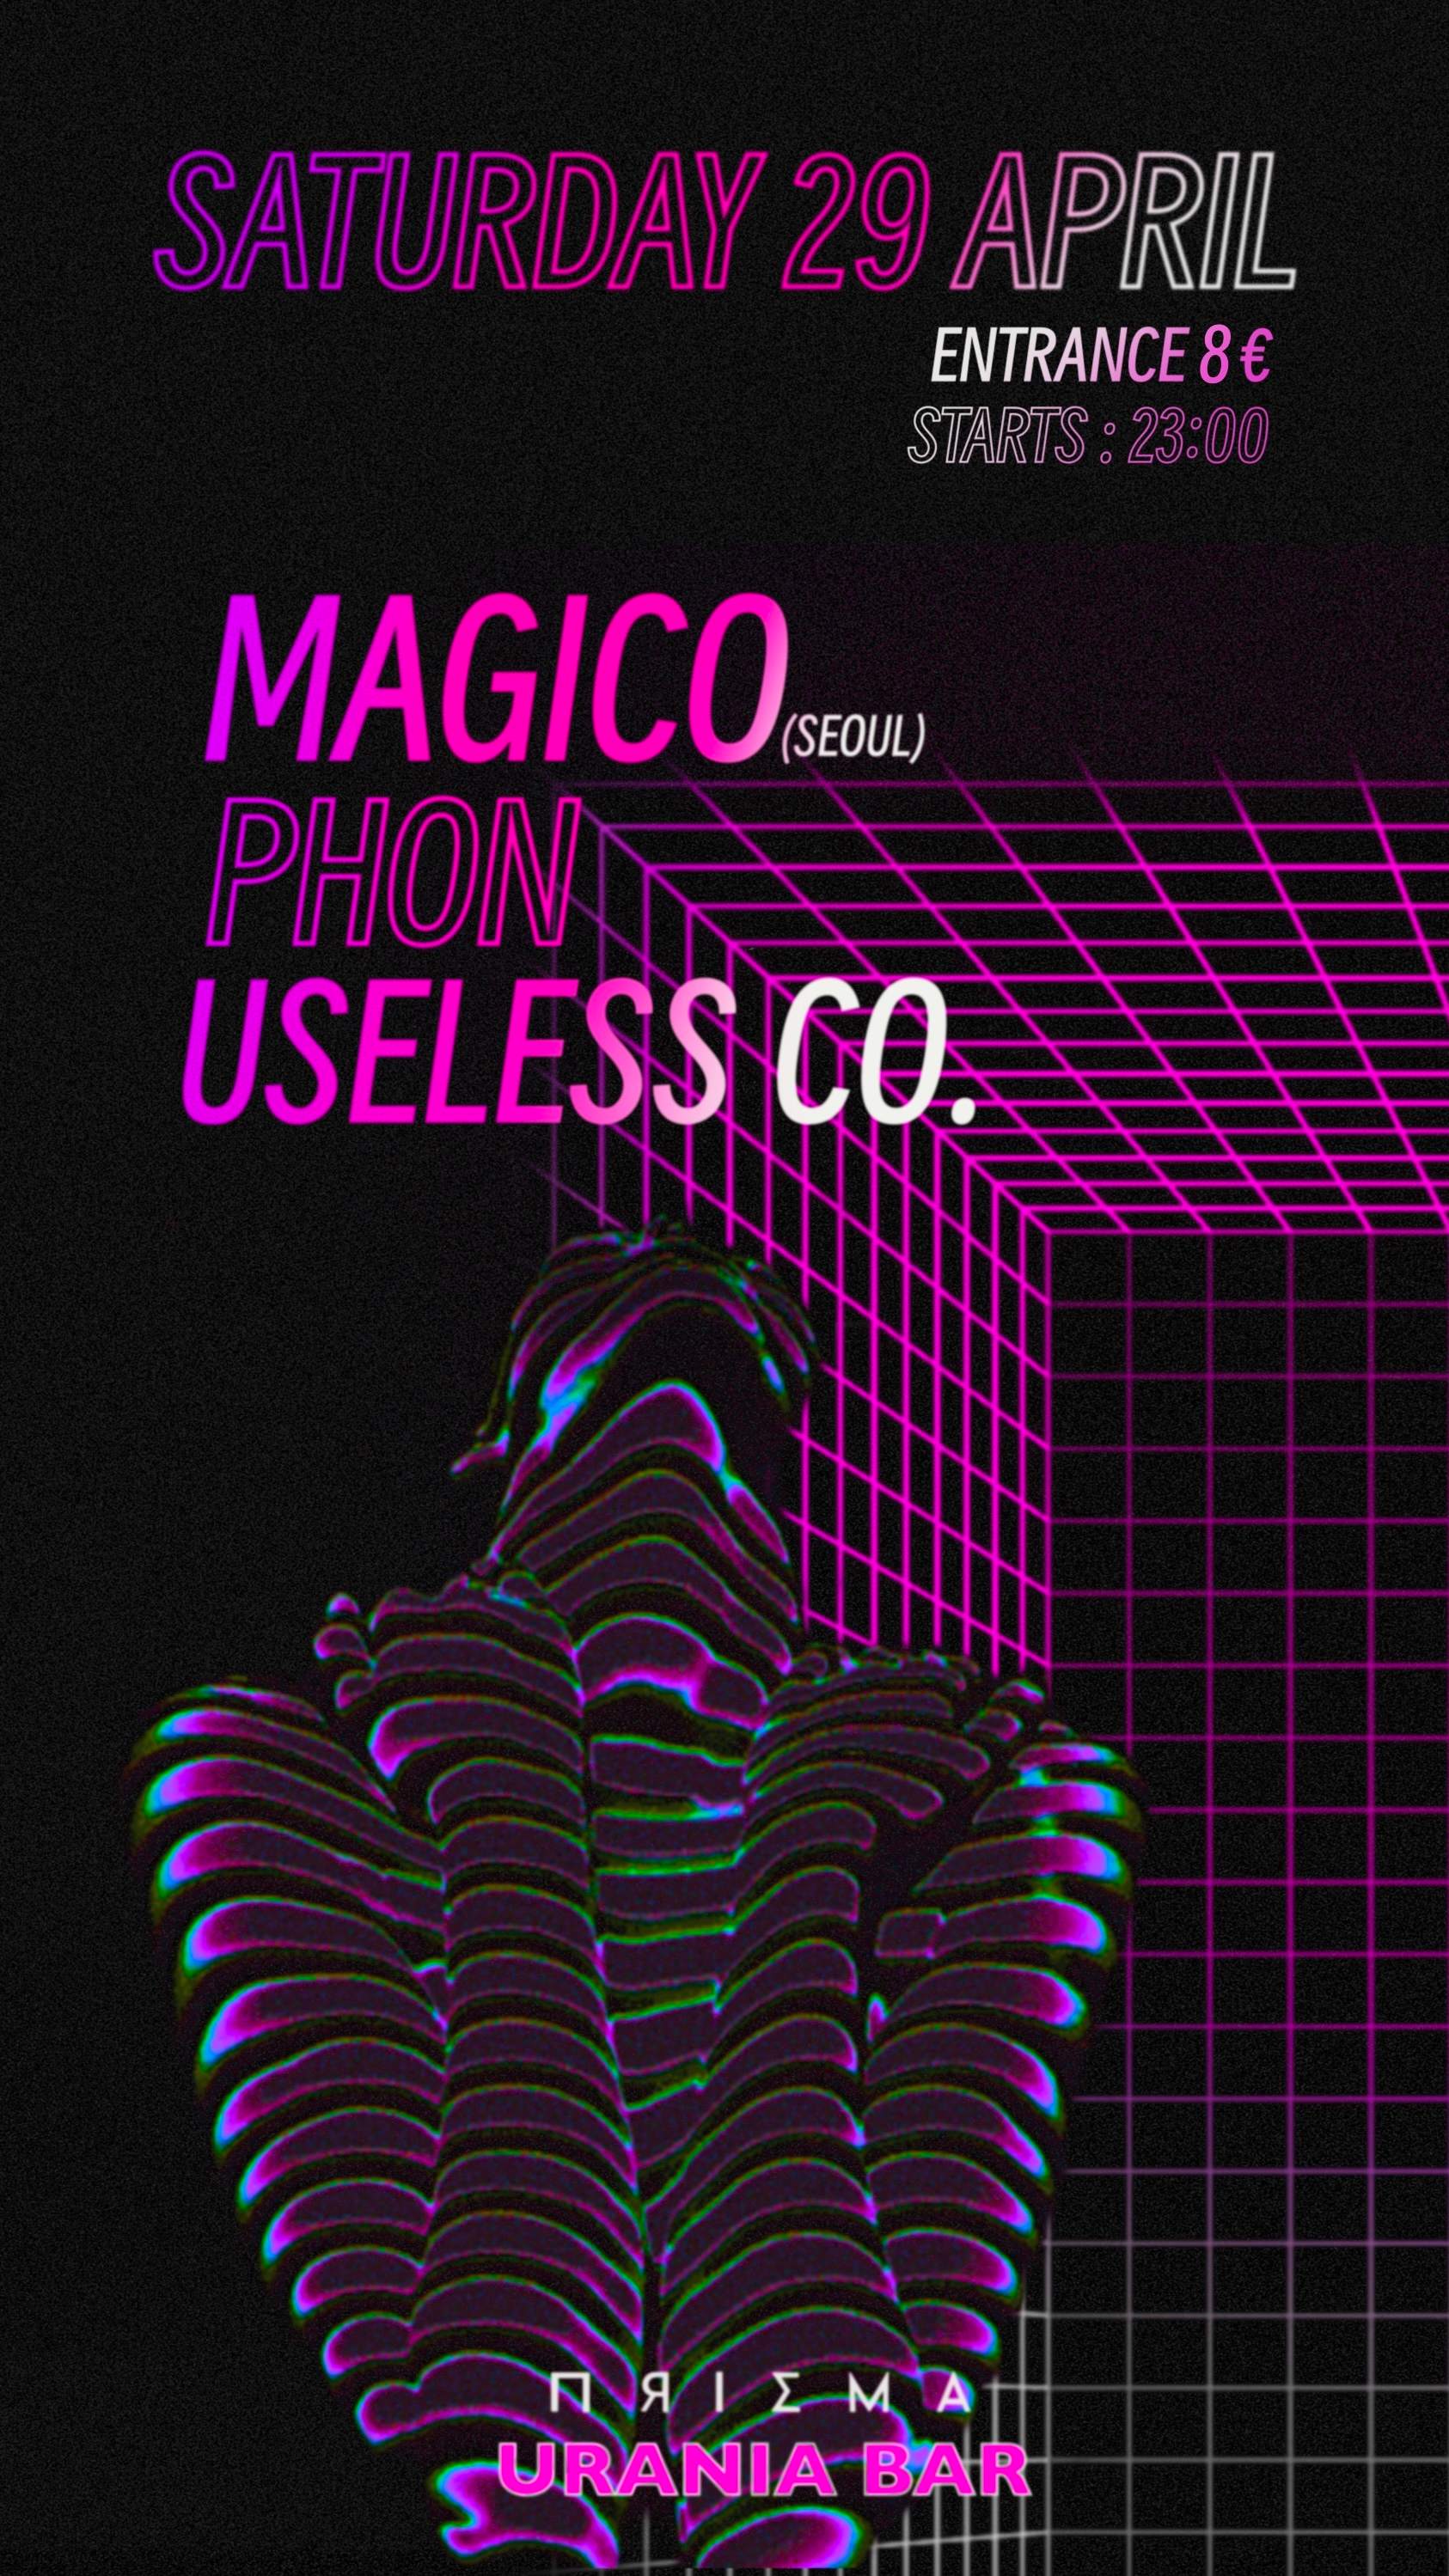 PRISM presents MAGICO - Página frontal